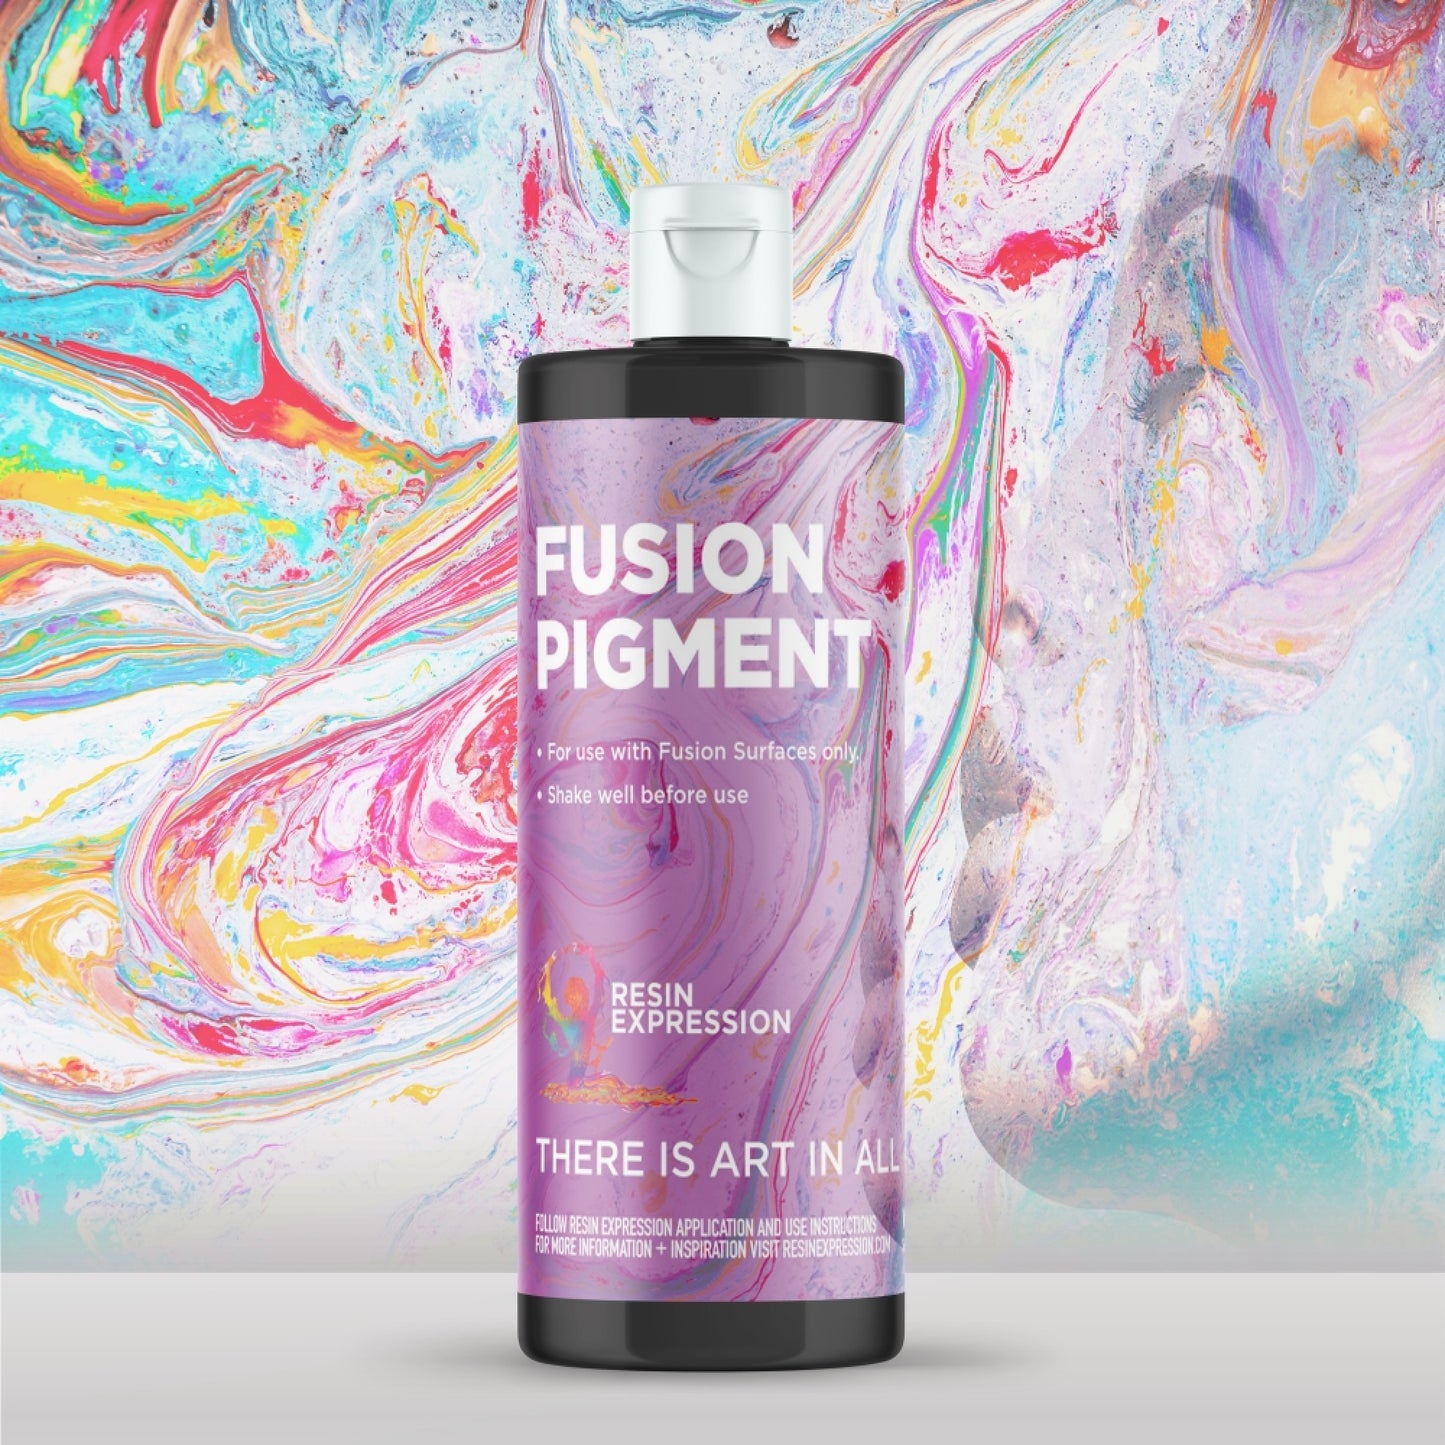 Vibrant and Unique: OREGON Fusion Countertop Freshness